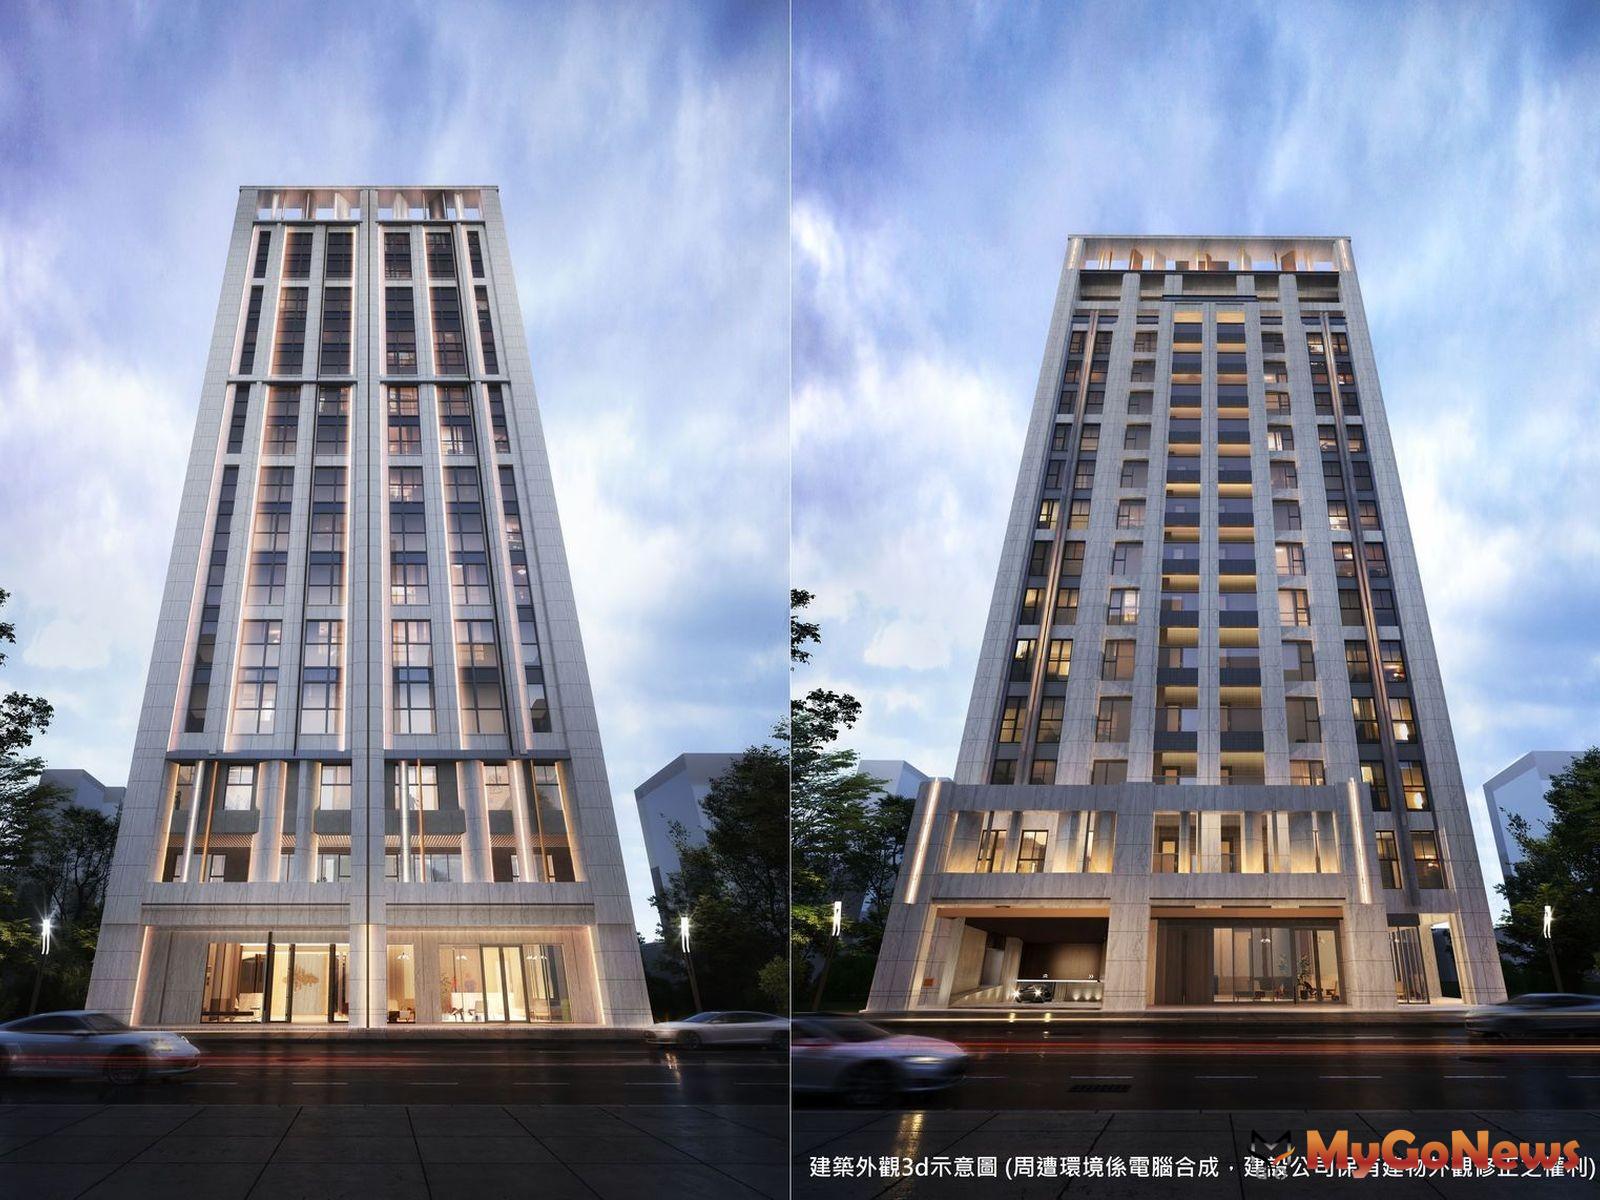 「昀集柏寓」建築外觀3d透視參考示意圖。 MyGoNews房地產新聞 市場快訊